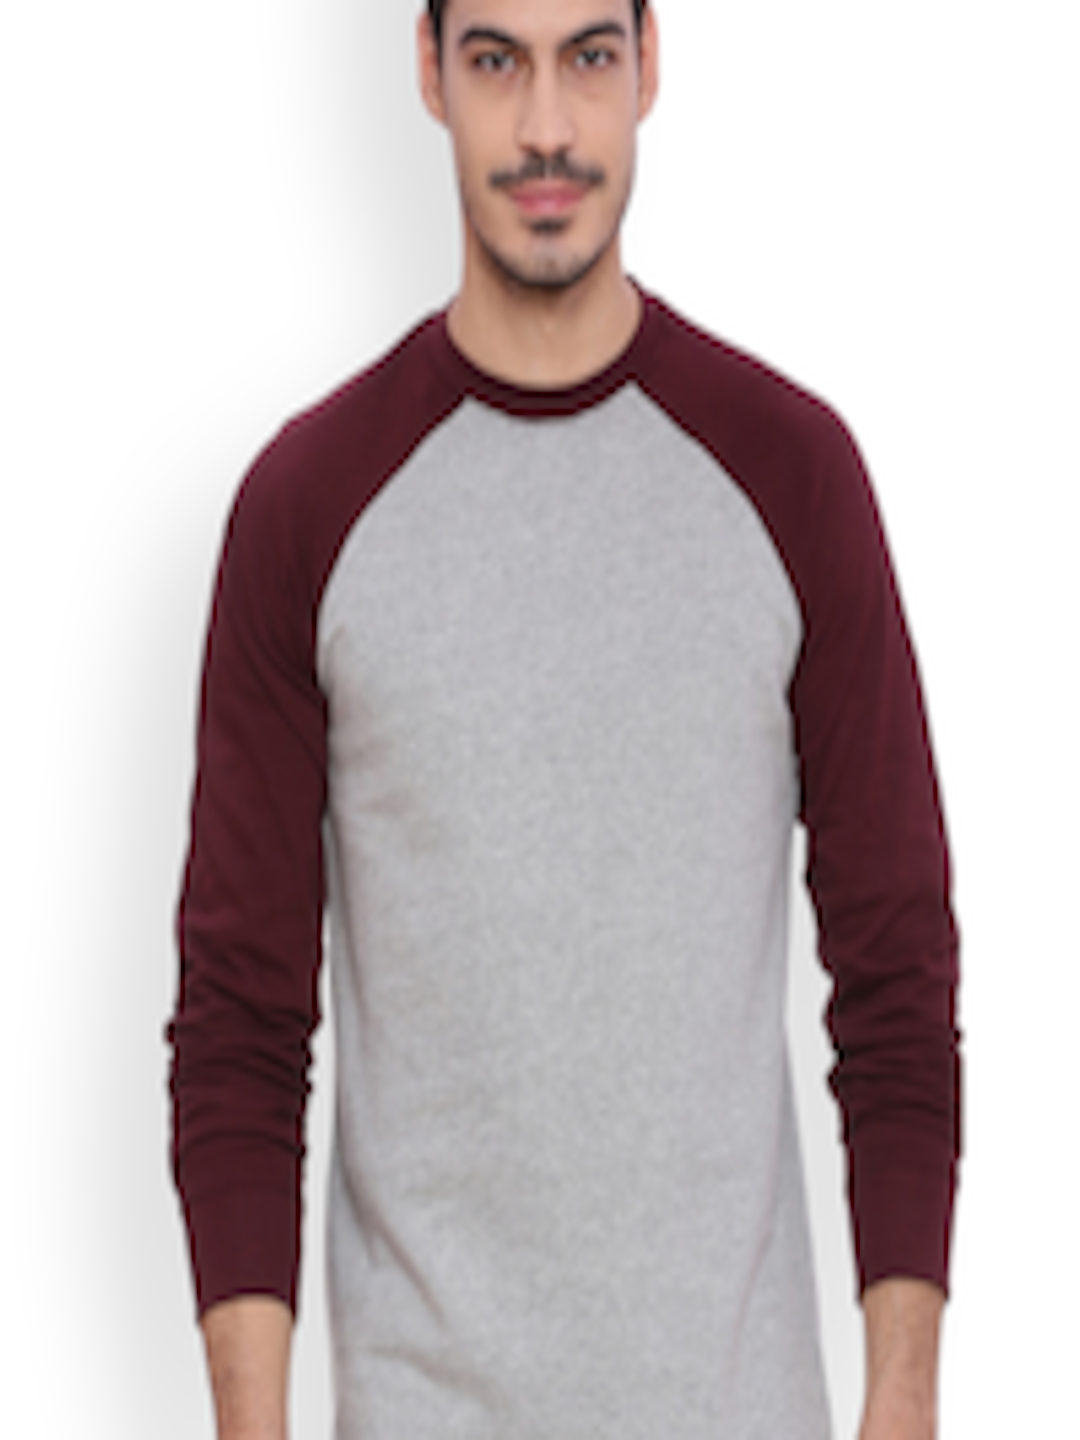 Buy ARISE Men Grey & Maroon Solid Sweatshirt - Sweatshirts for Men ...